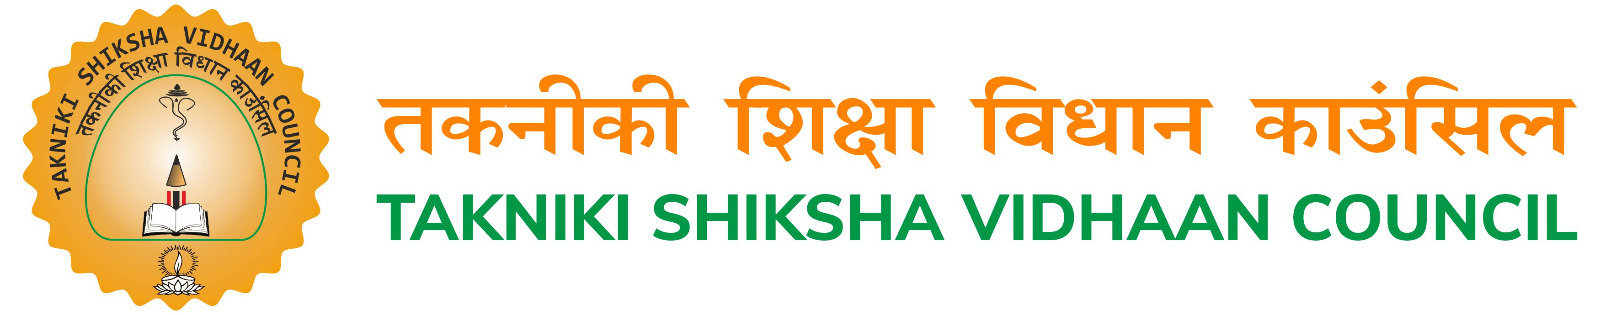 Takniki Shiksha Vidhaan Council